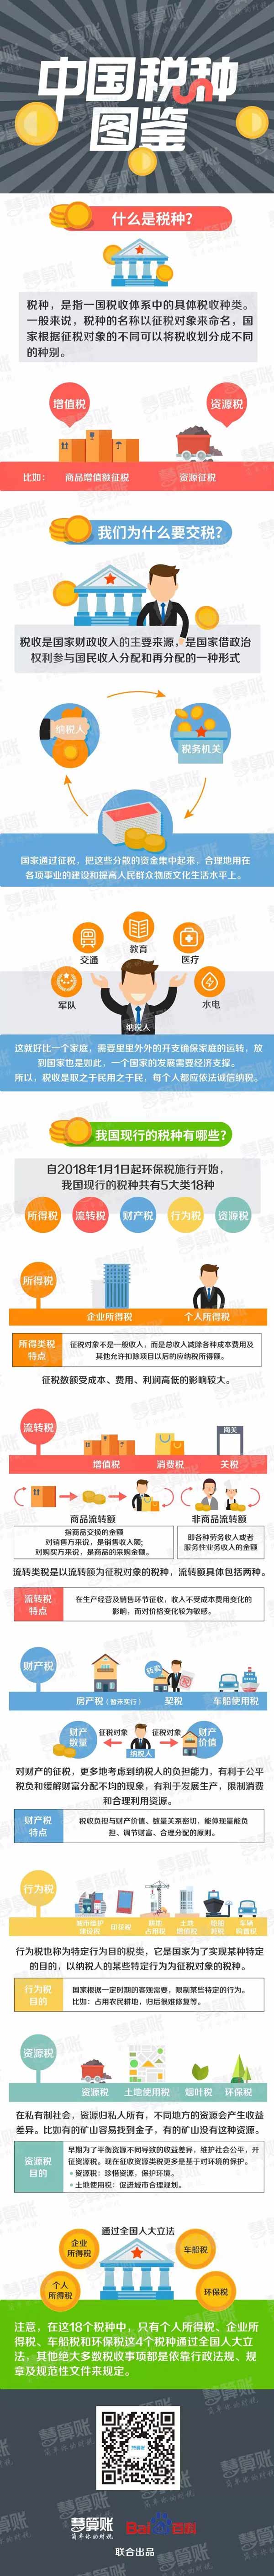 开化中国税种图鉴